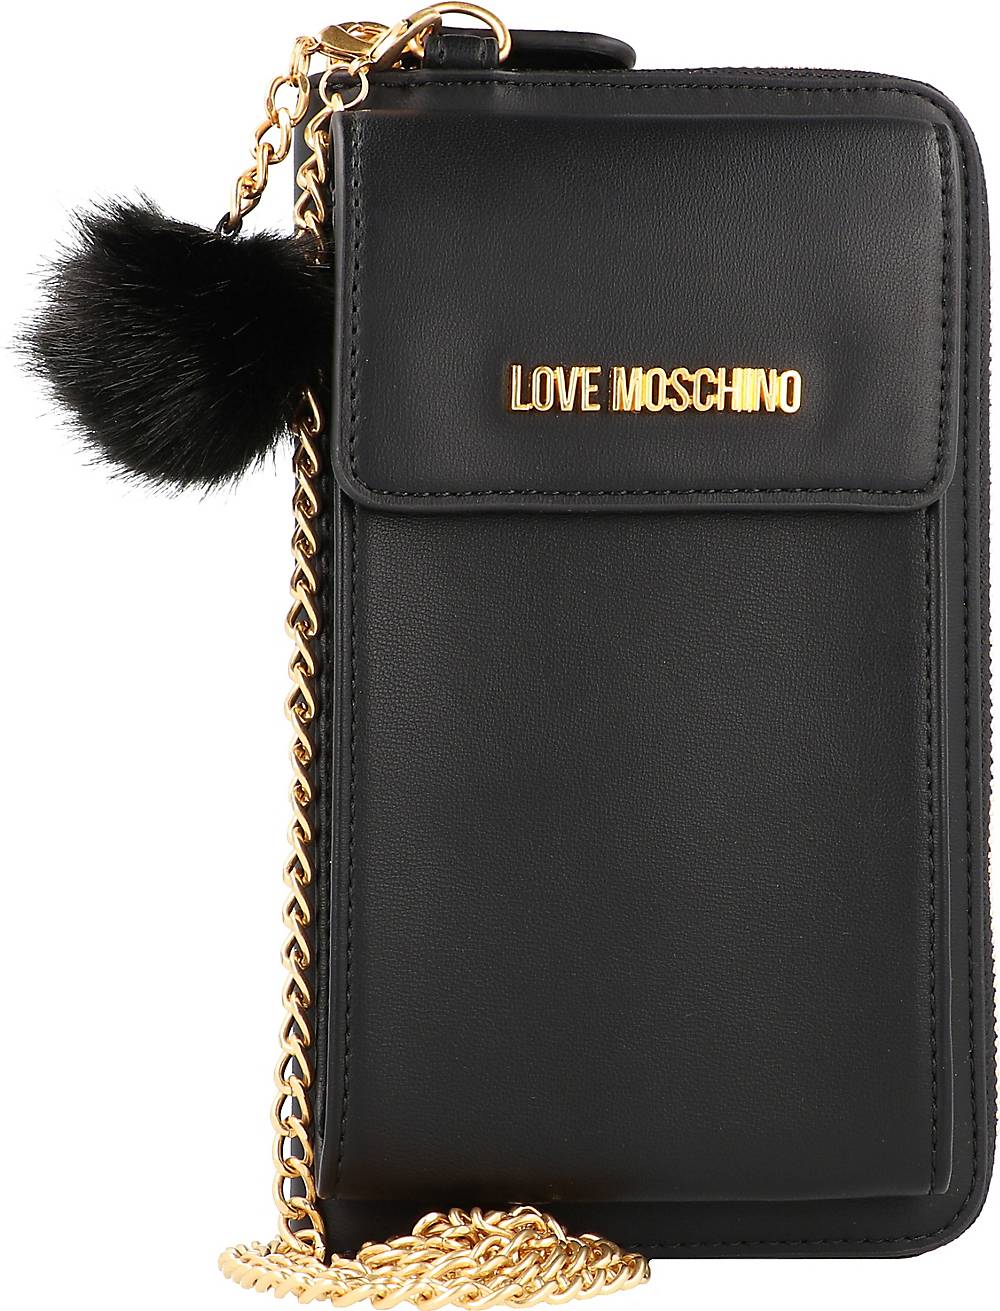 Love Moschino, Slg Handytasche Geldbörse 11 Cm in schwarz, Handyhüllen & Zubehör für Damen